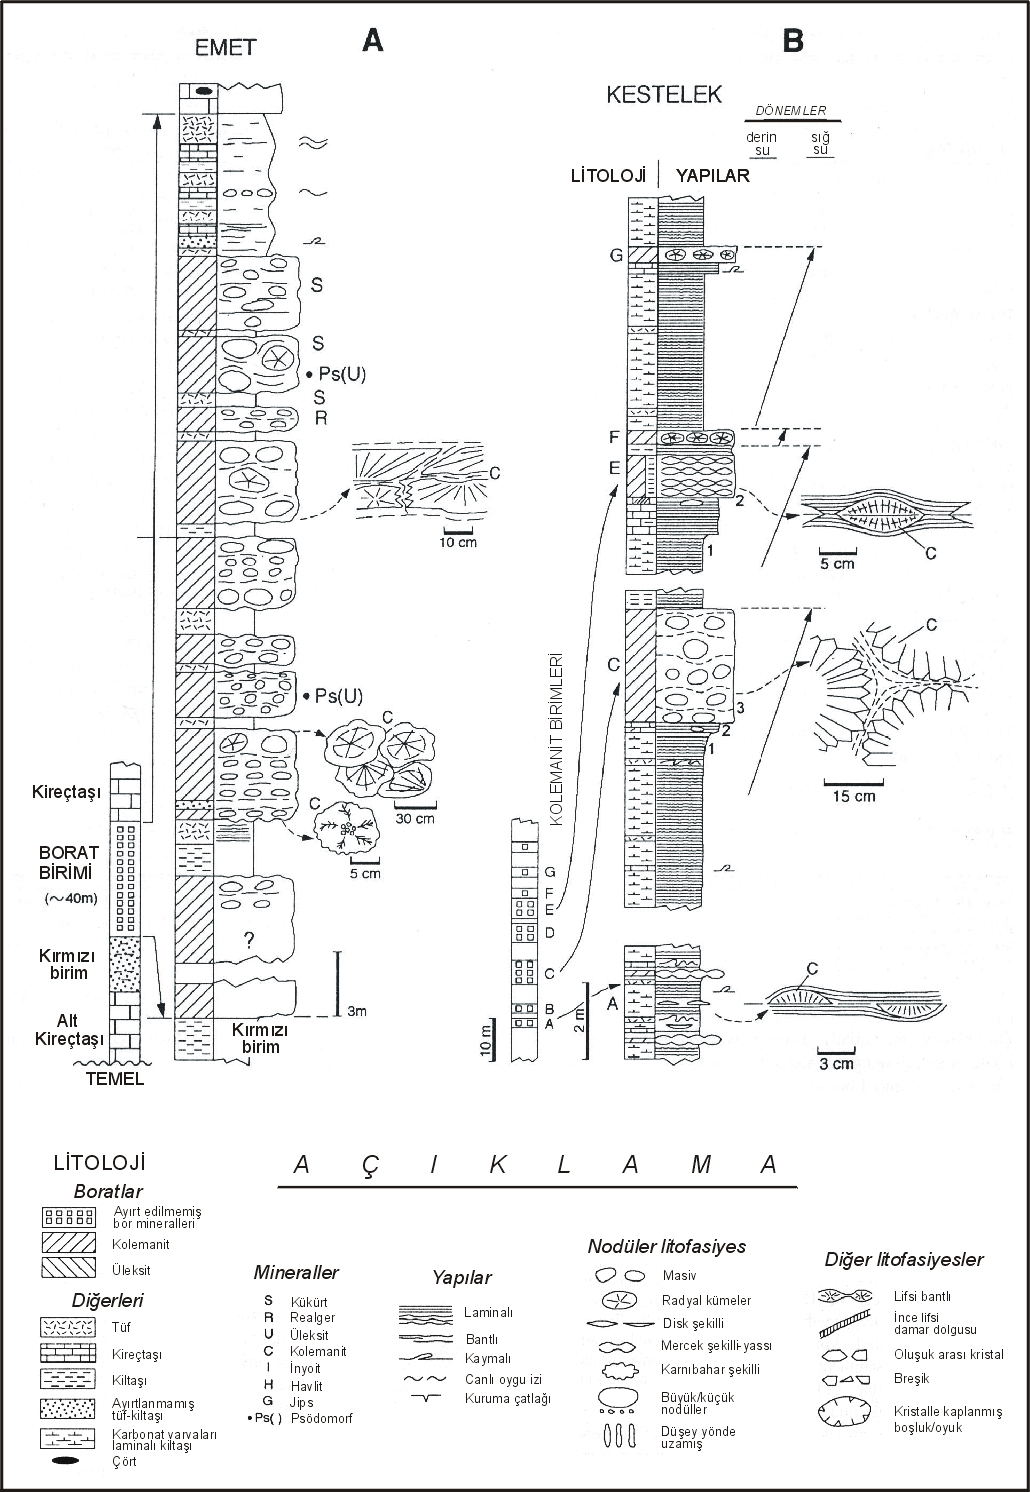 Şekil 3. Emet (A) ve Kestelek (B) açık ocak işletmelerinin ayrıntılı stratigrafik kesitleri.